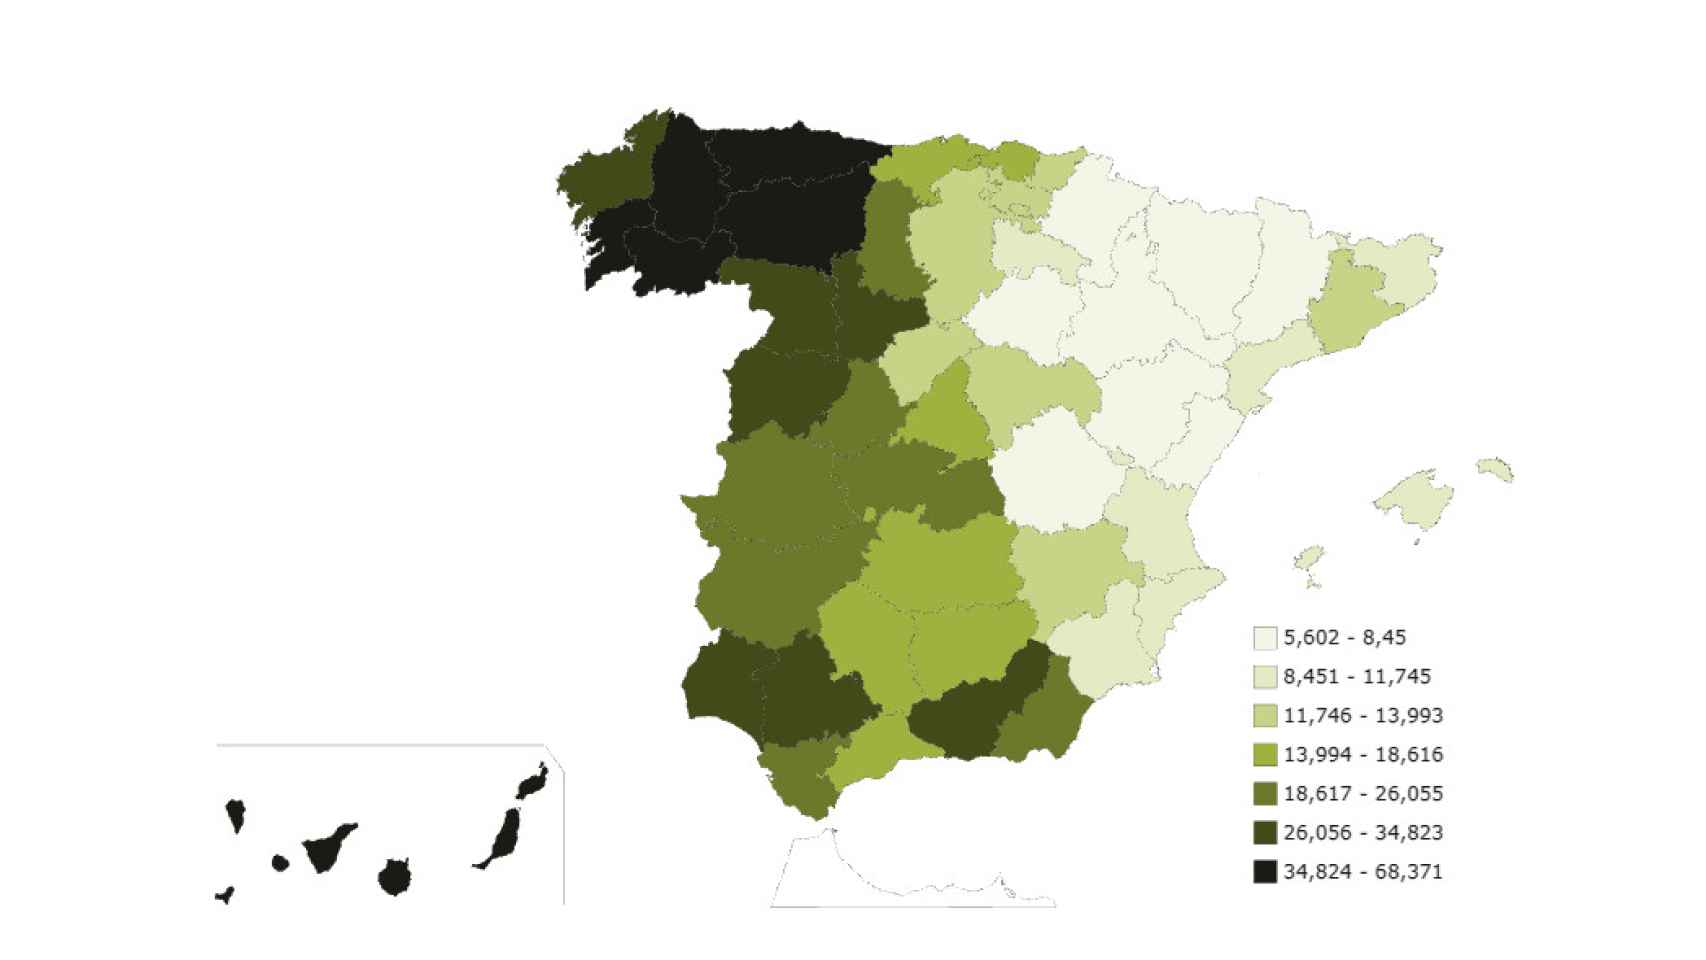 Mapa de distribución del apellido 'Rodríguez' en España